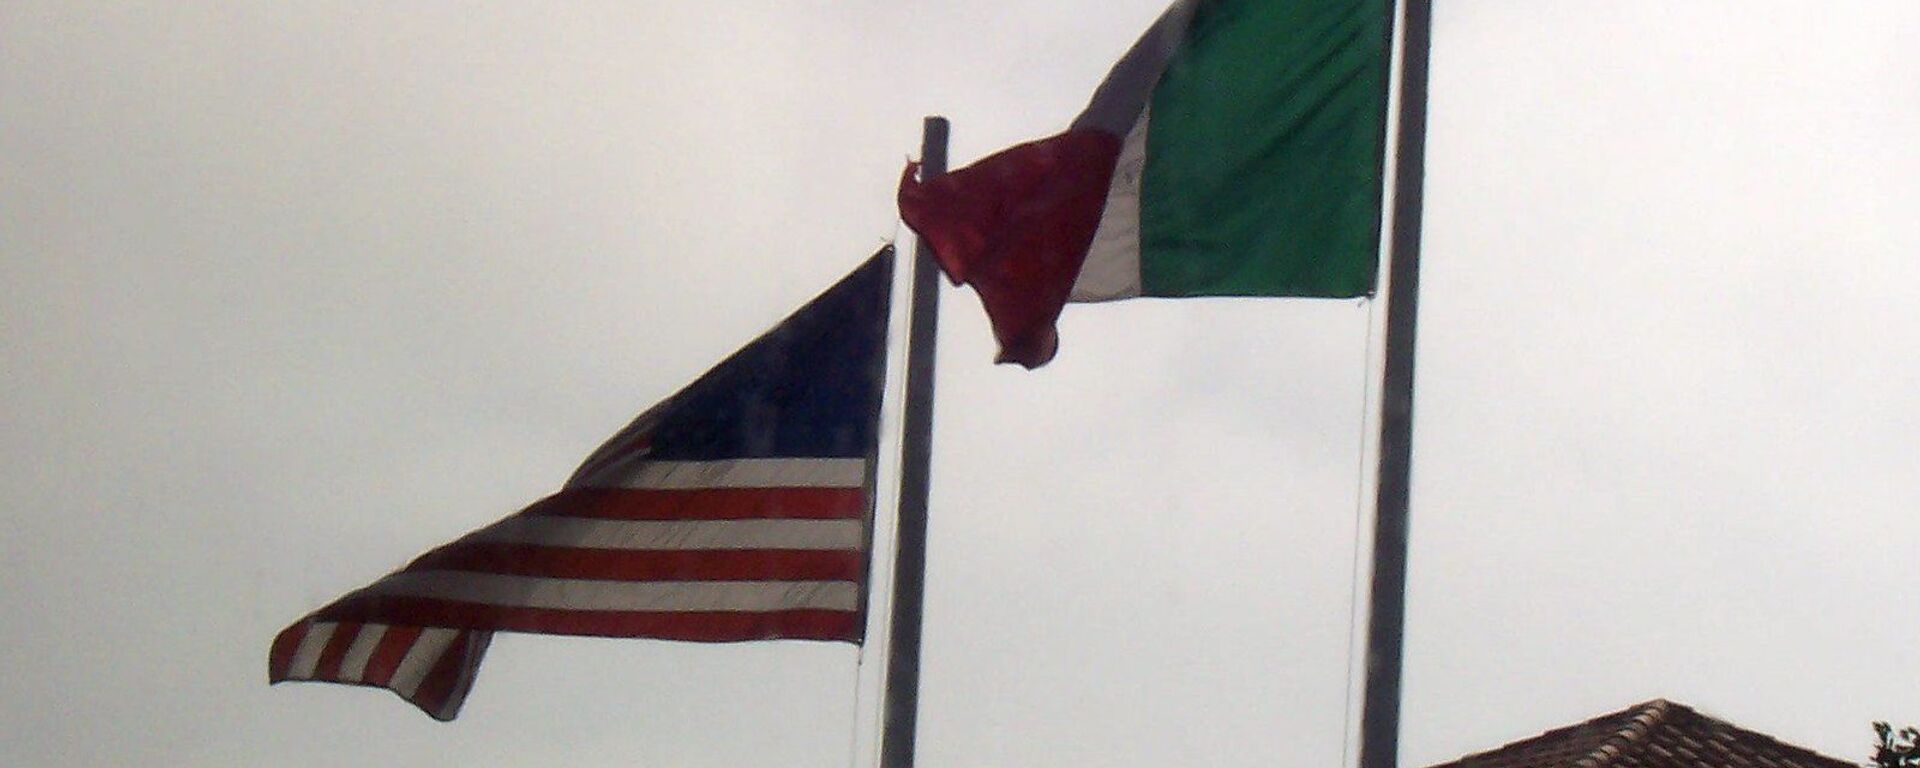 Banderas de EEUU y México - Sputnik Mundo, 1920, 09.10.2021